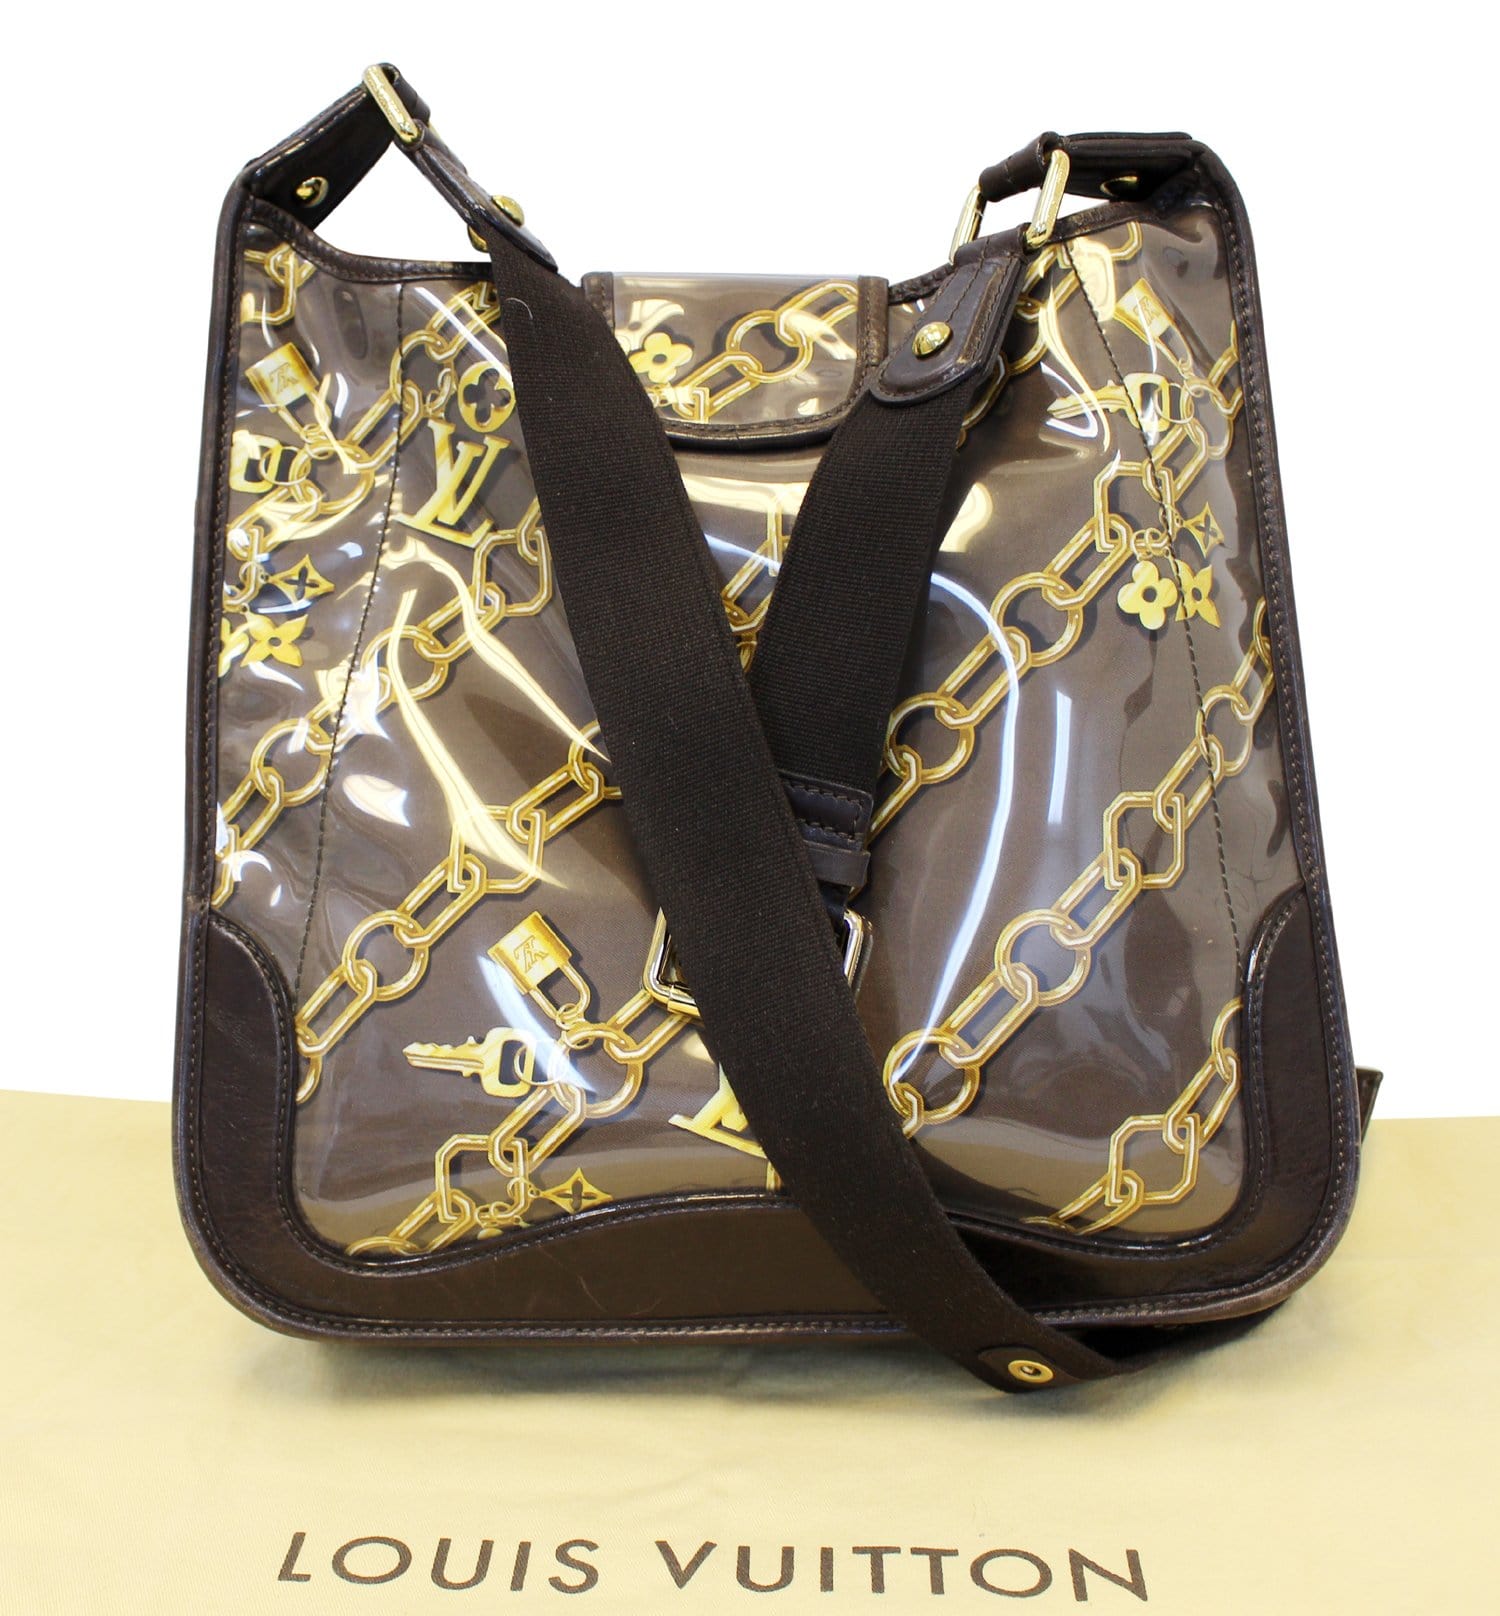 Auth Louis Vuitton Monogram Musette Shoulder bag 0i030060n